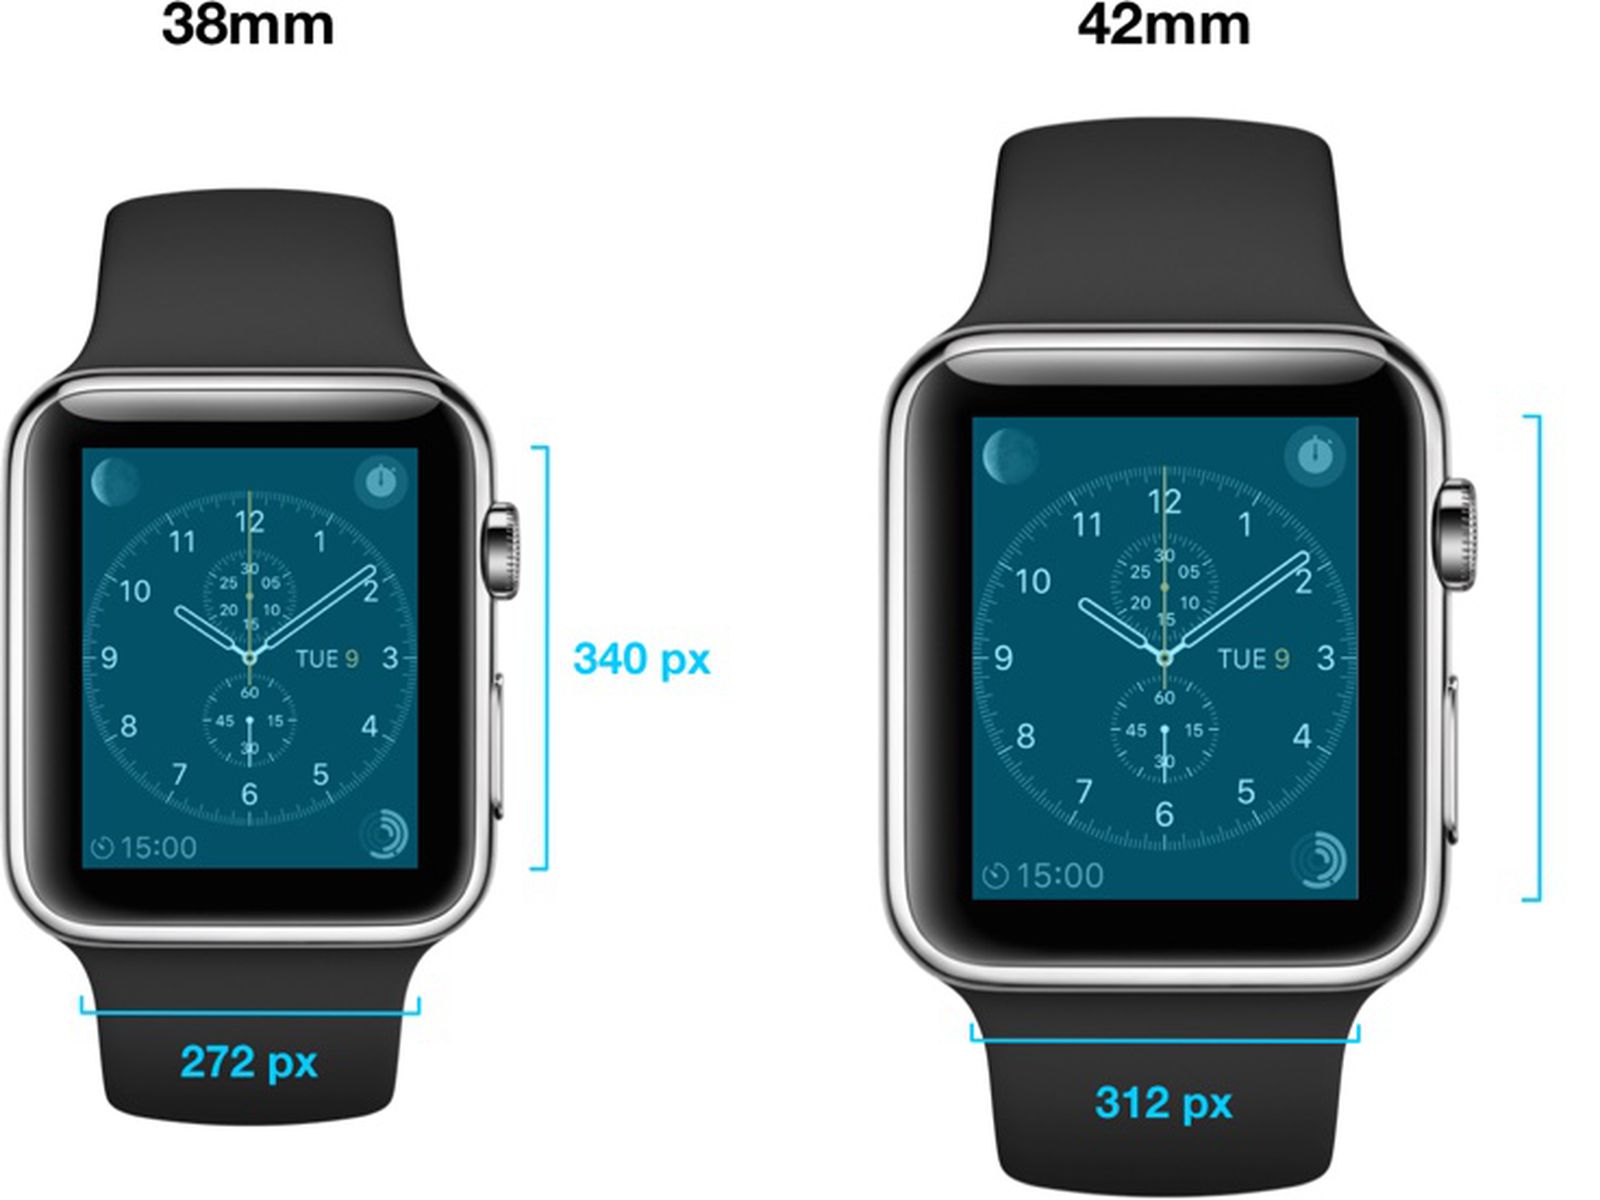 Когда выйдет 7 часы. Apple watch 5 44 мм размер экрана. Эппл вотч 8 дисплей. Apple watch 8 45mm диагональ экрана. Apple watch 7 диагональ в сантиметрах.